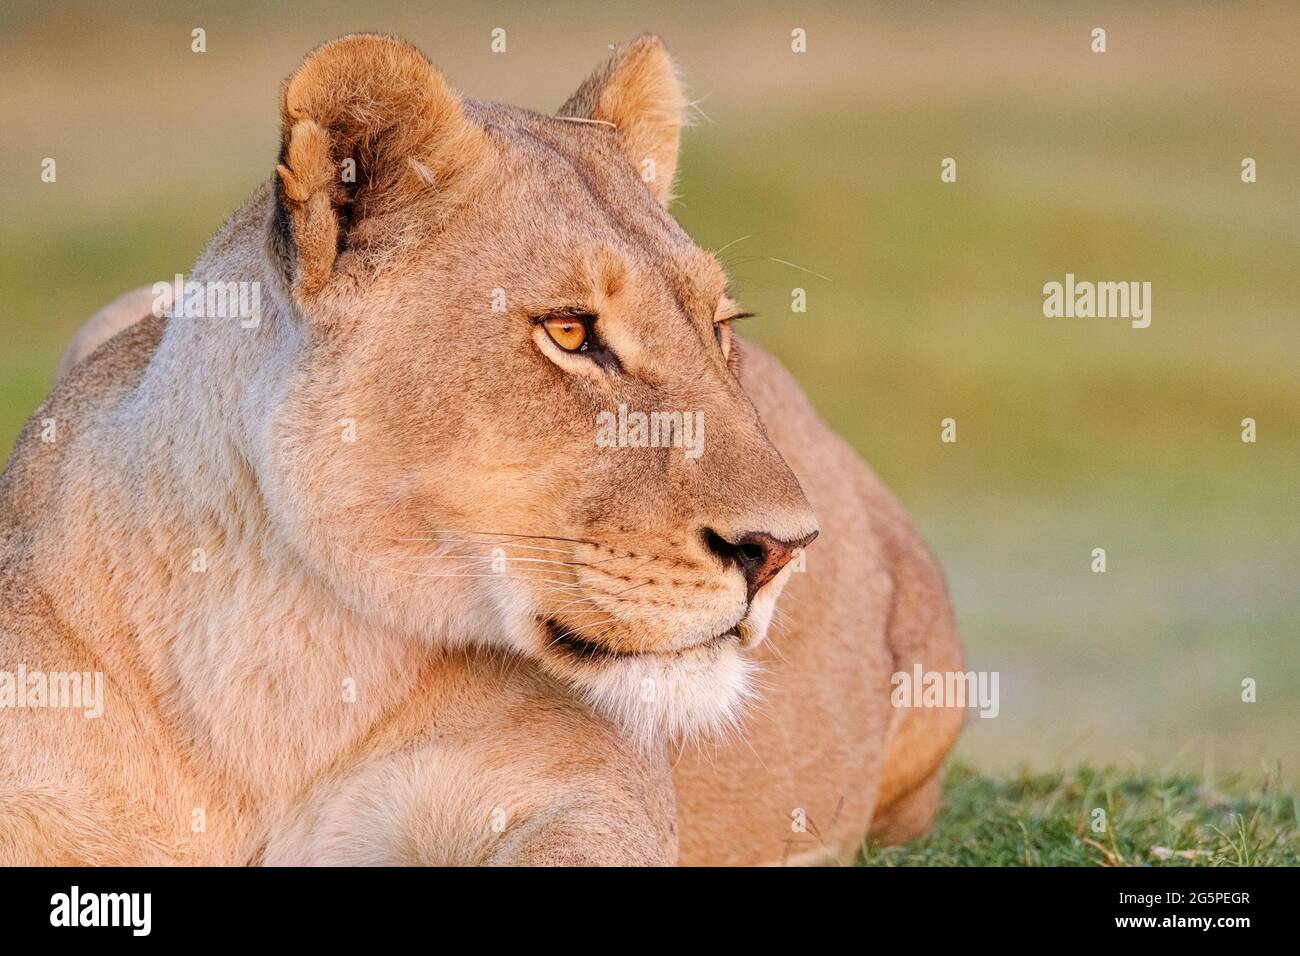 Lioness Porträt, Panthera leo, Augen, Gesicht Kopf Seitenansicht des Profils. Verschwommener Hintergrund Okavango Delta, Botsuana, Afrika Stockfoto